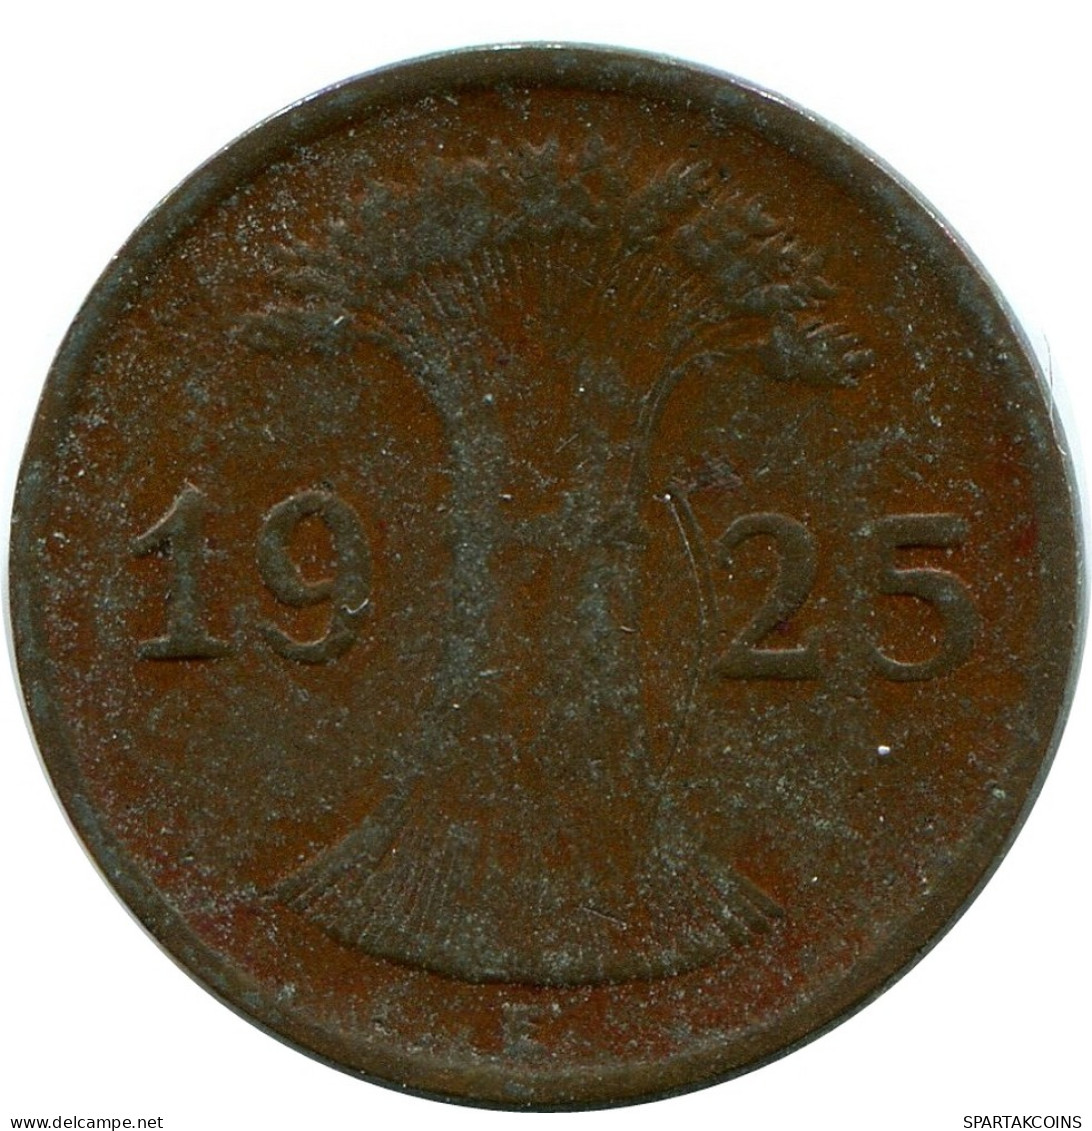 1 REICHSPFENNIG 1925 F ALEMANIA Moneda GERMANY #DB775.E - 1 Rentenpfennig & 1 Reichspfennig